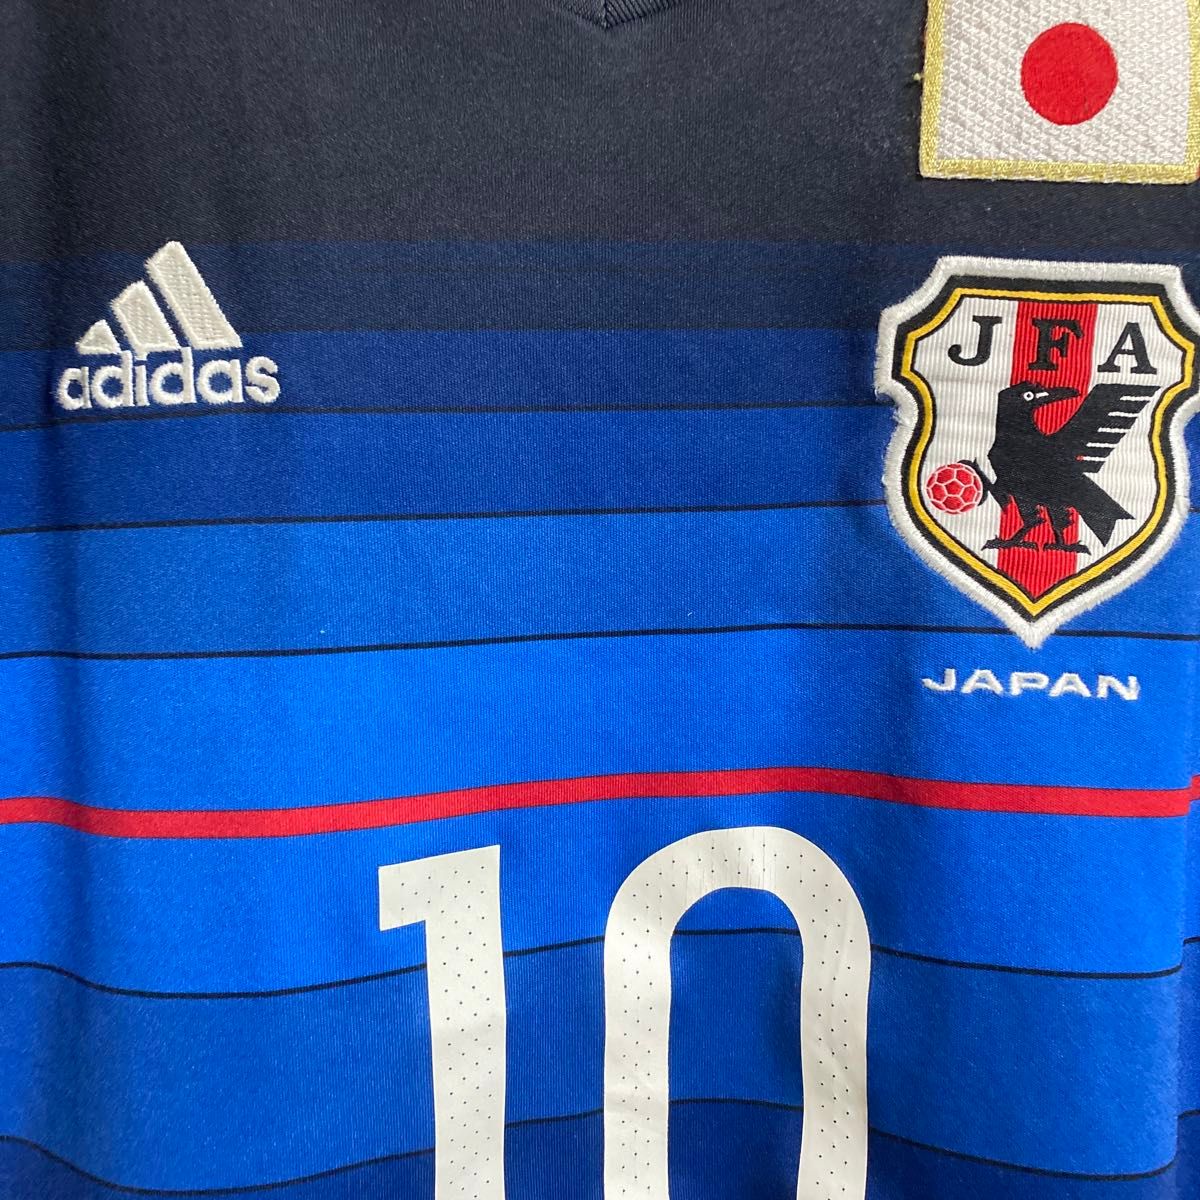 日本代表 ユニフォーム アディダス adidas サッカー日本代表 サッカー 香川